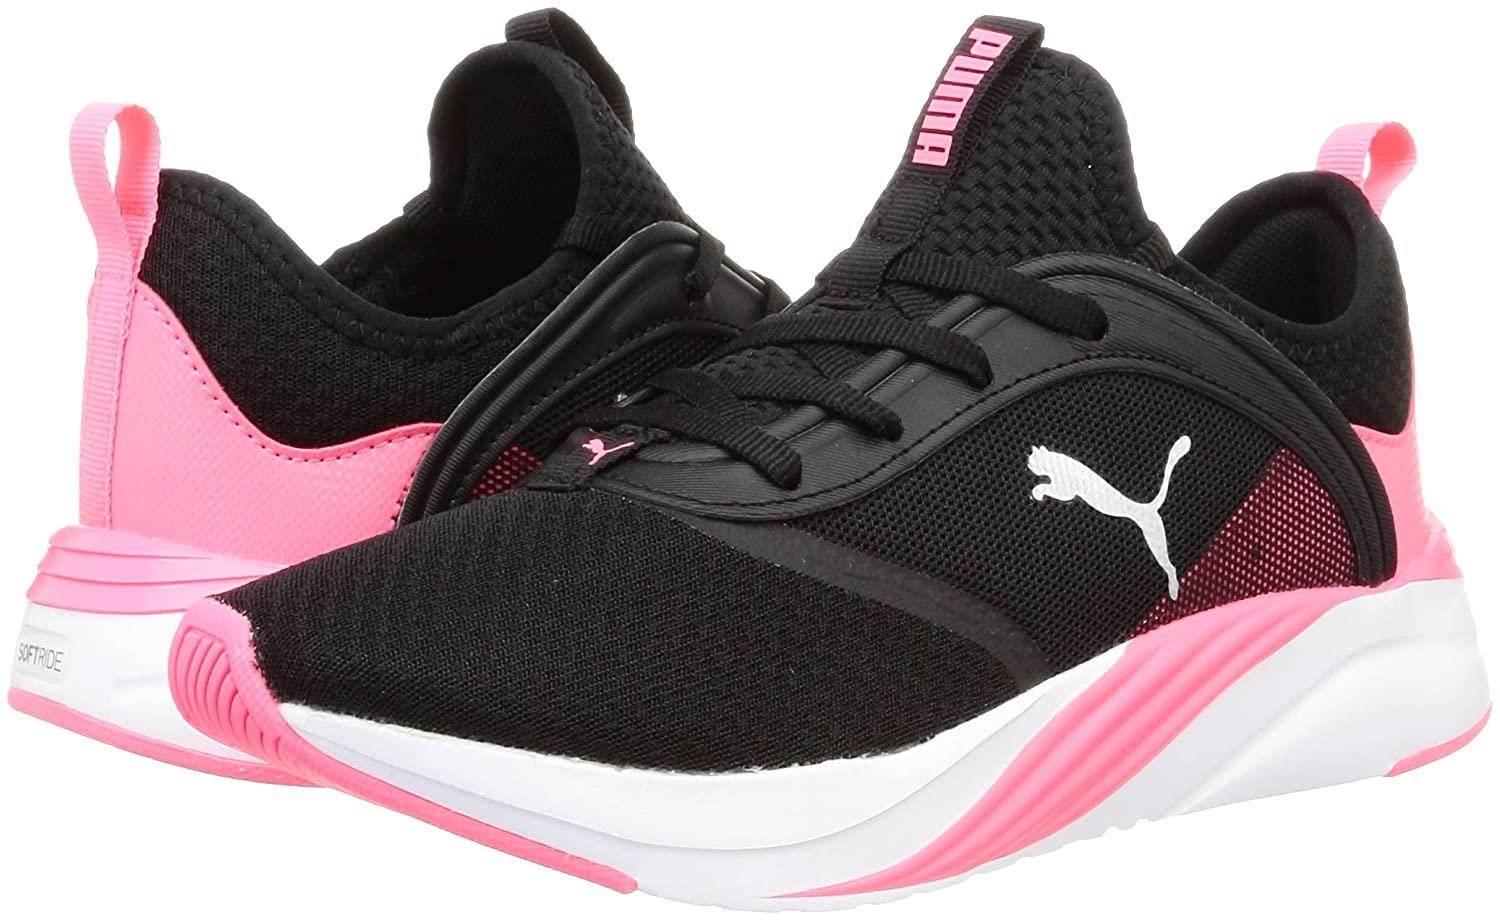 Buy Hw 100 Women's Active Walking Shoes Black Pink Online | Decathlon